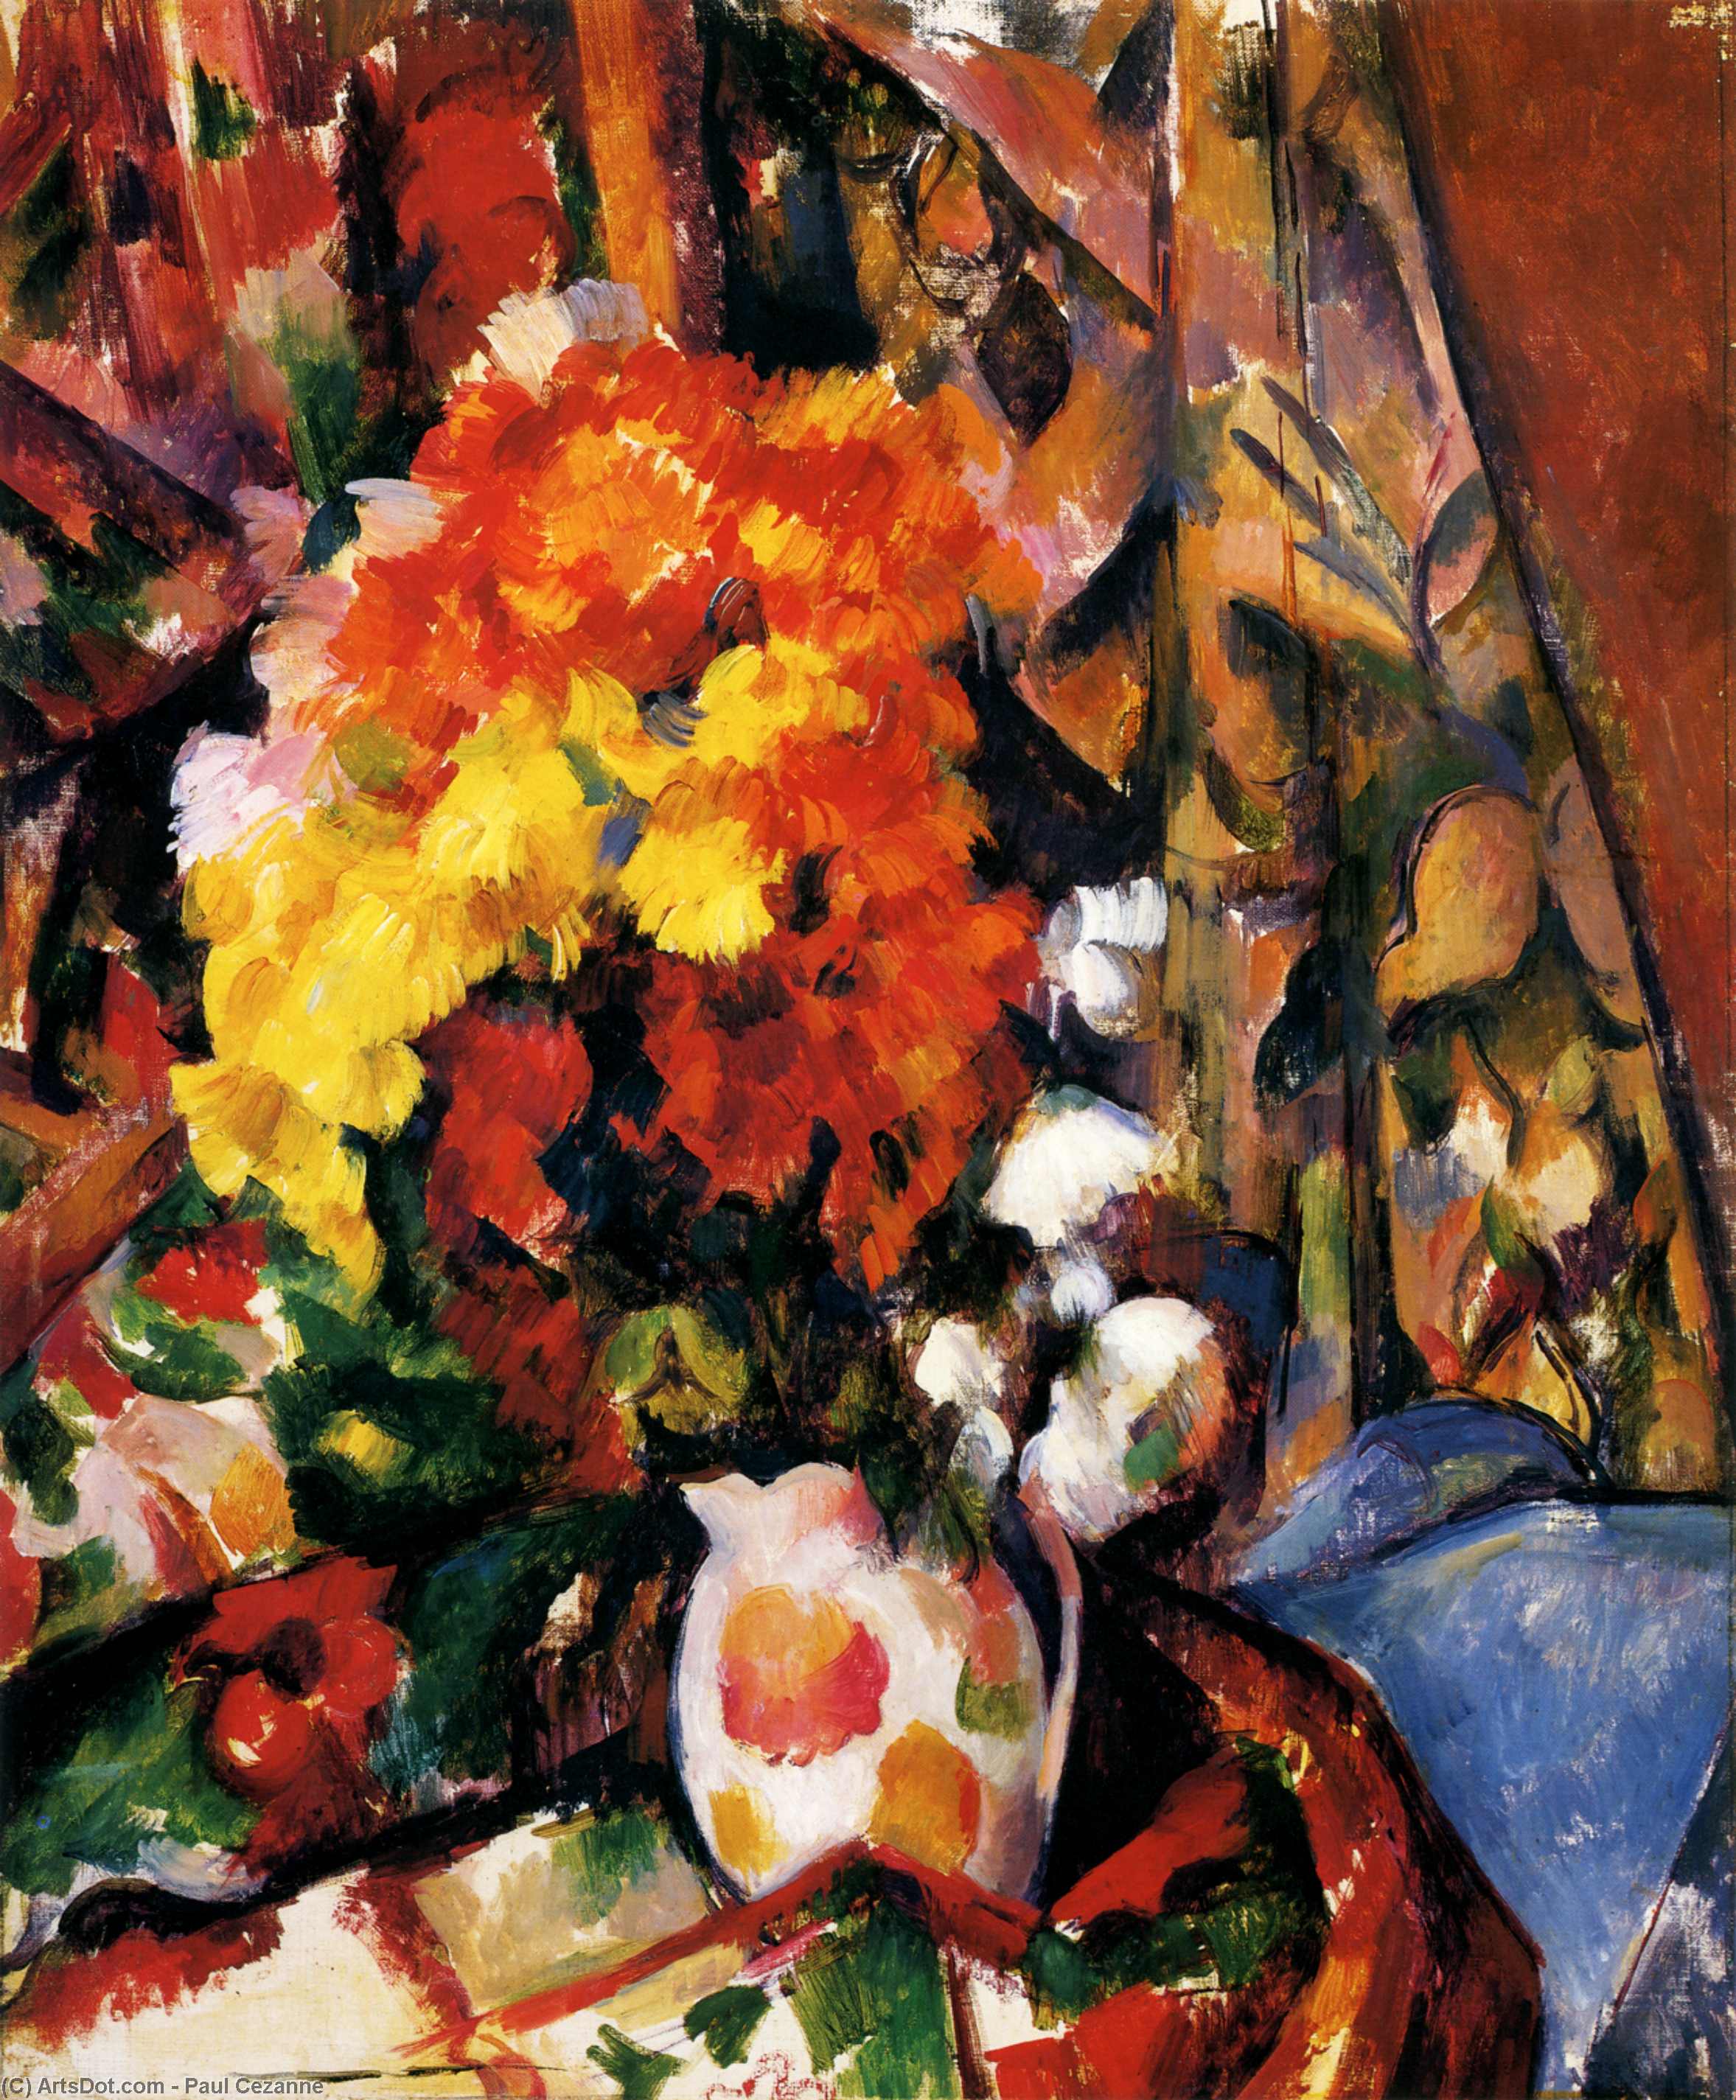 Compra Riproduzioni D'arte Del Museo Crisantemi, 1898 di Paul Cezanne (1839-1906, France) | ArtsDot.com